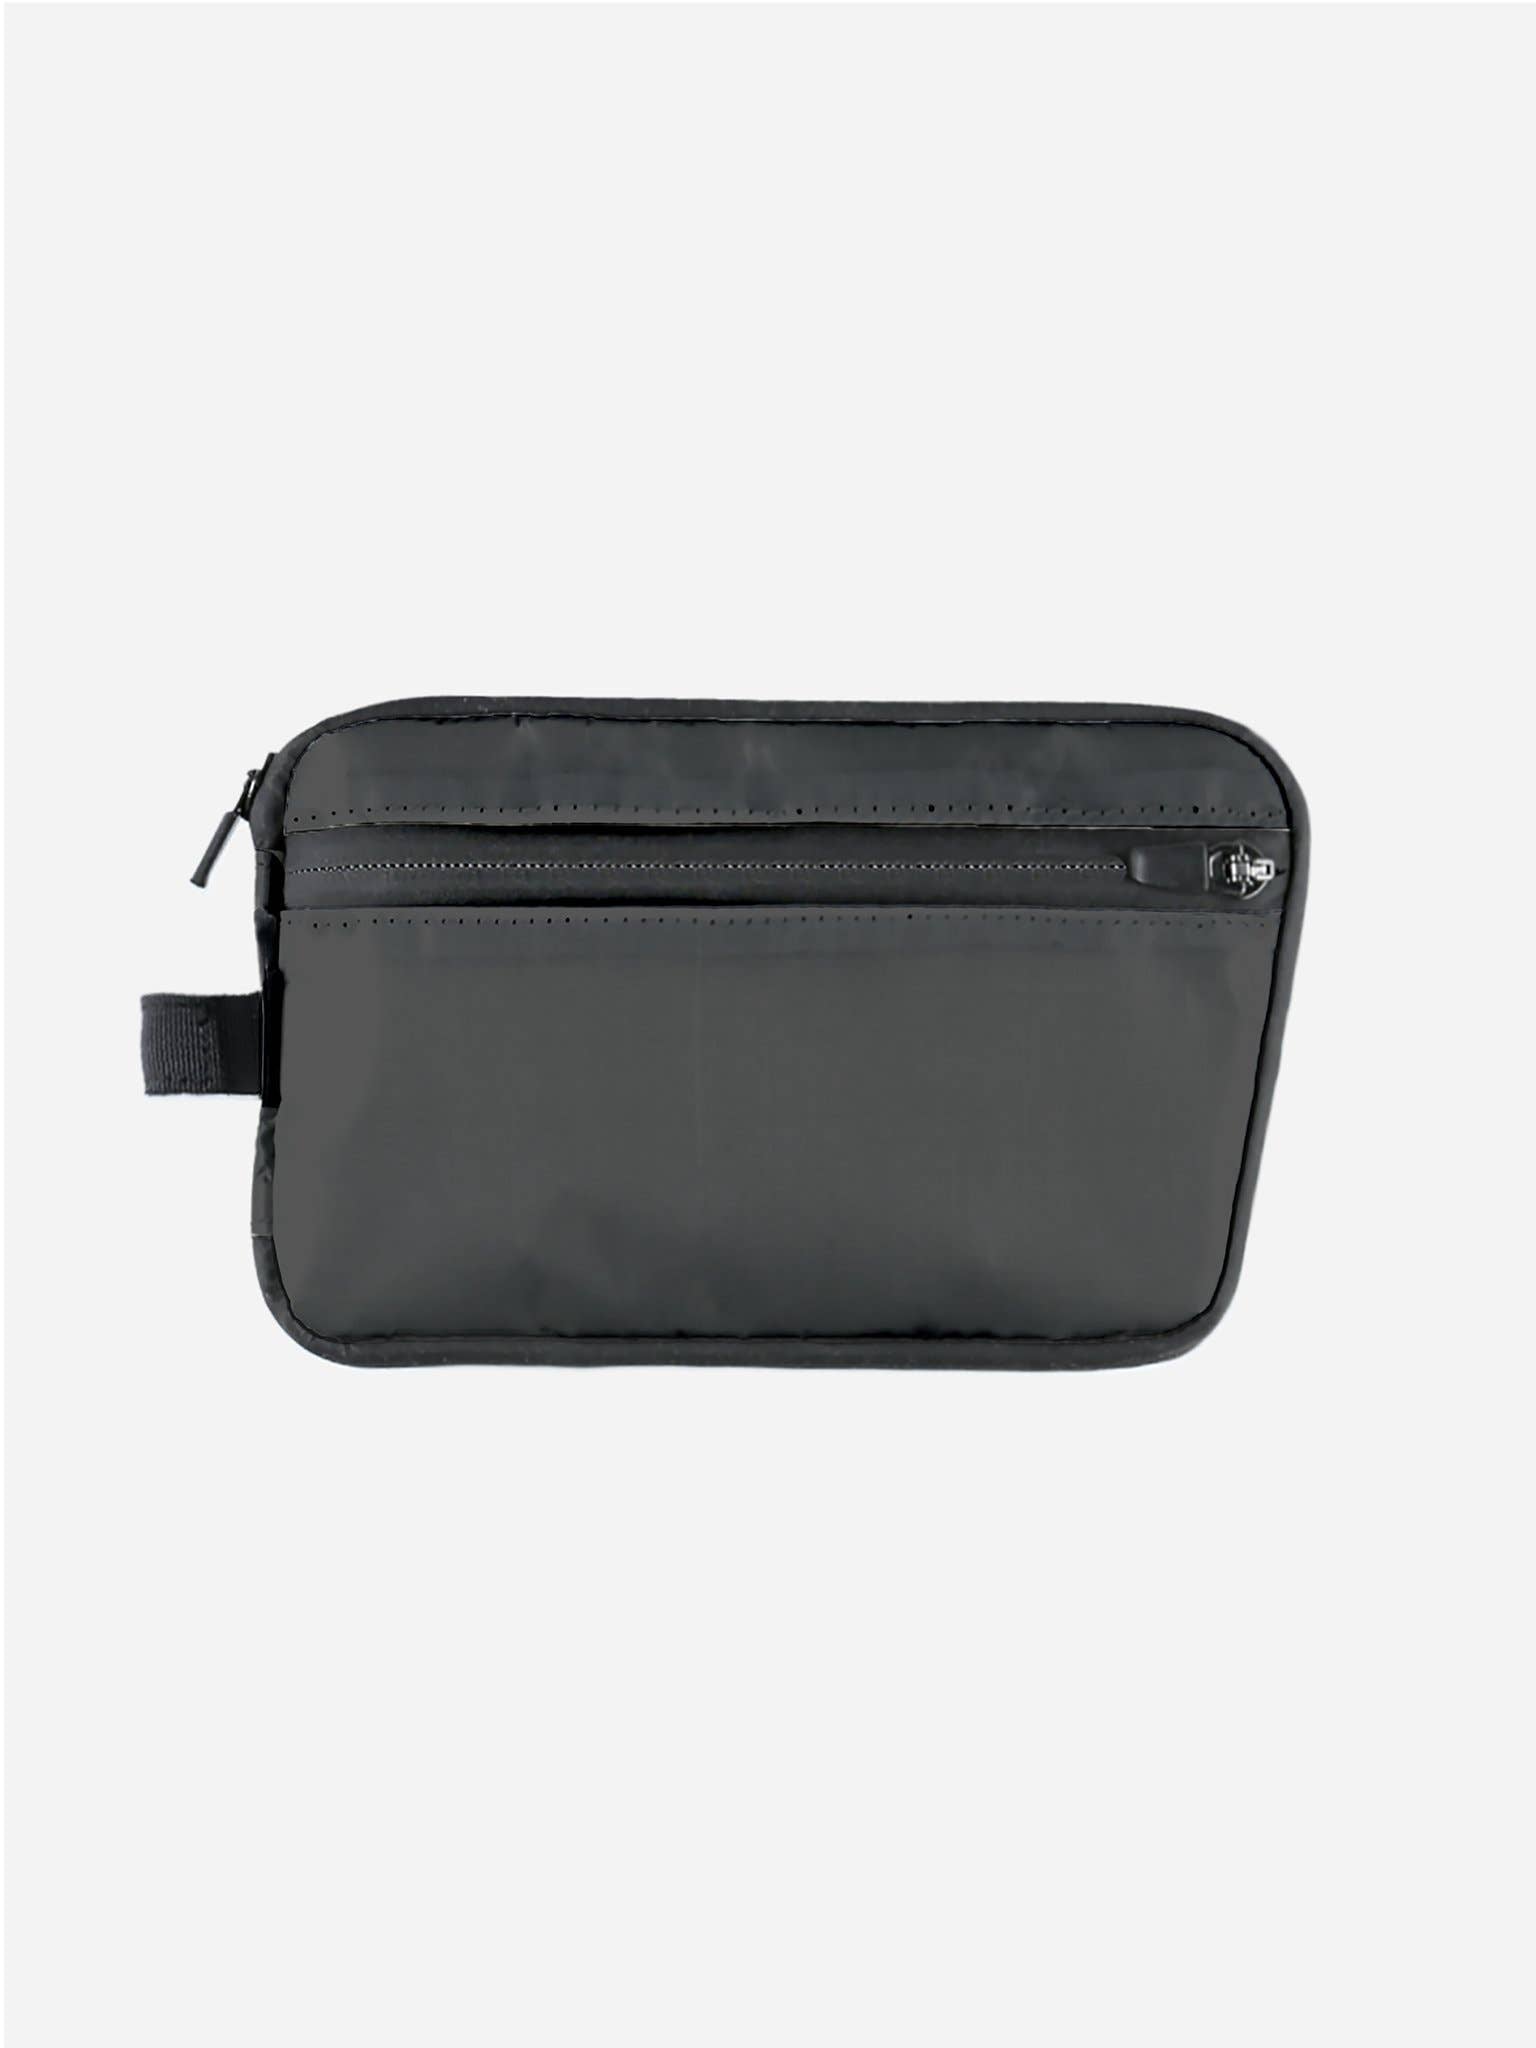 AUX™ Pocket (Black Dyneema Edition)